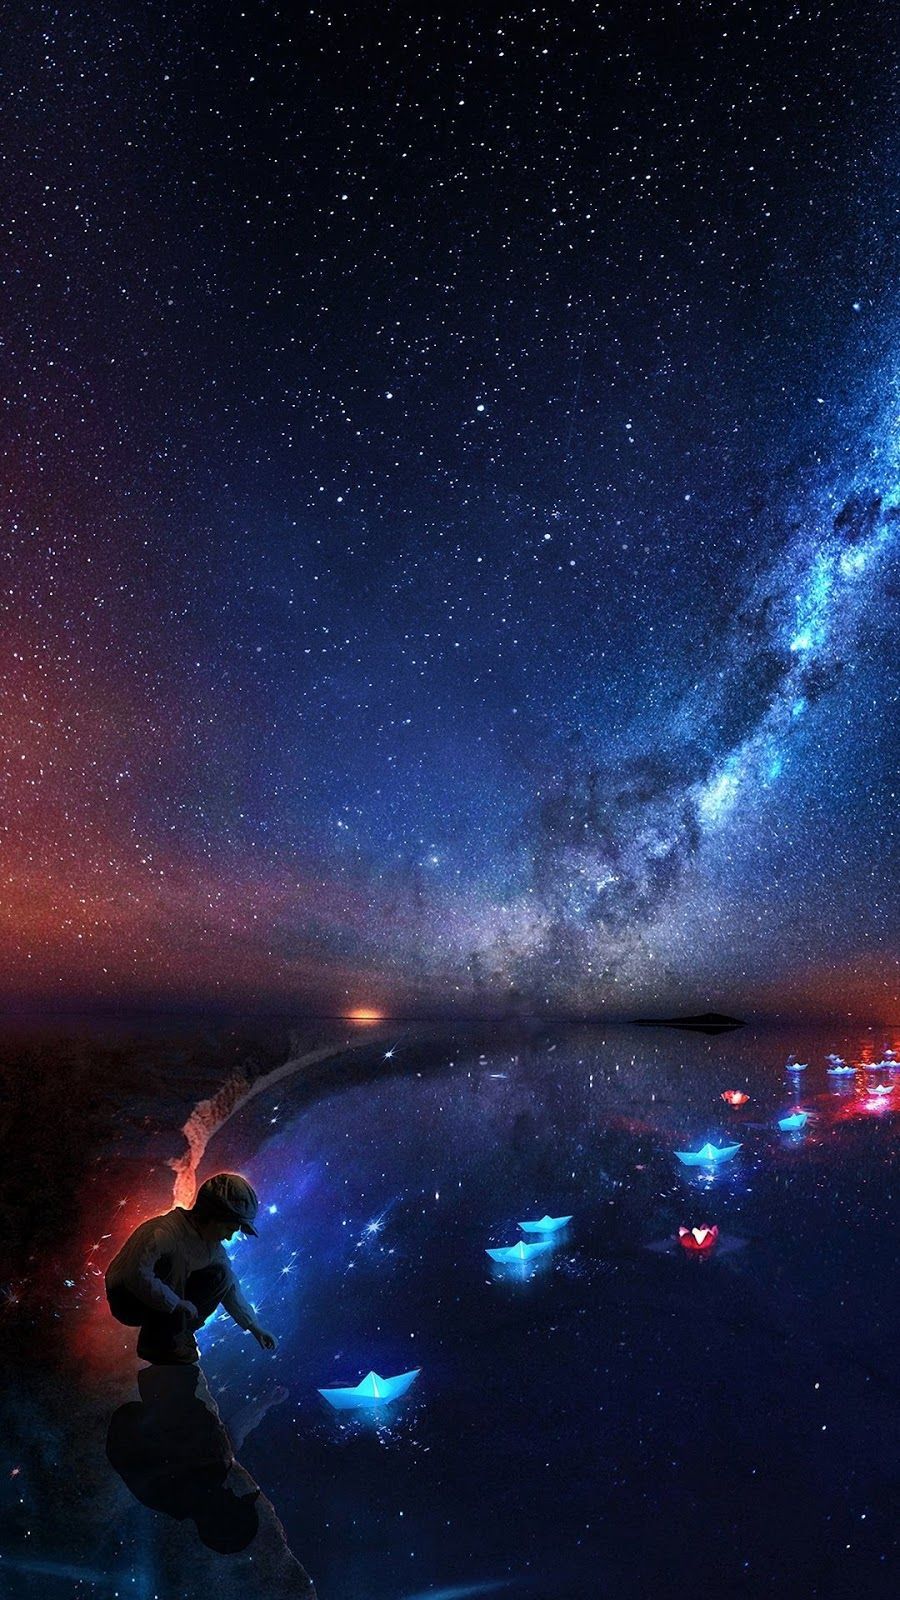 Starry night. Starry night wallpaper, Galaxy wallpaper, Fantasy